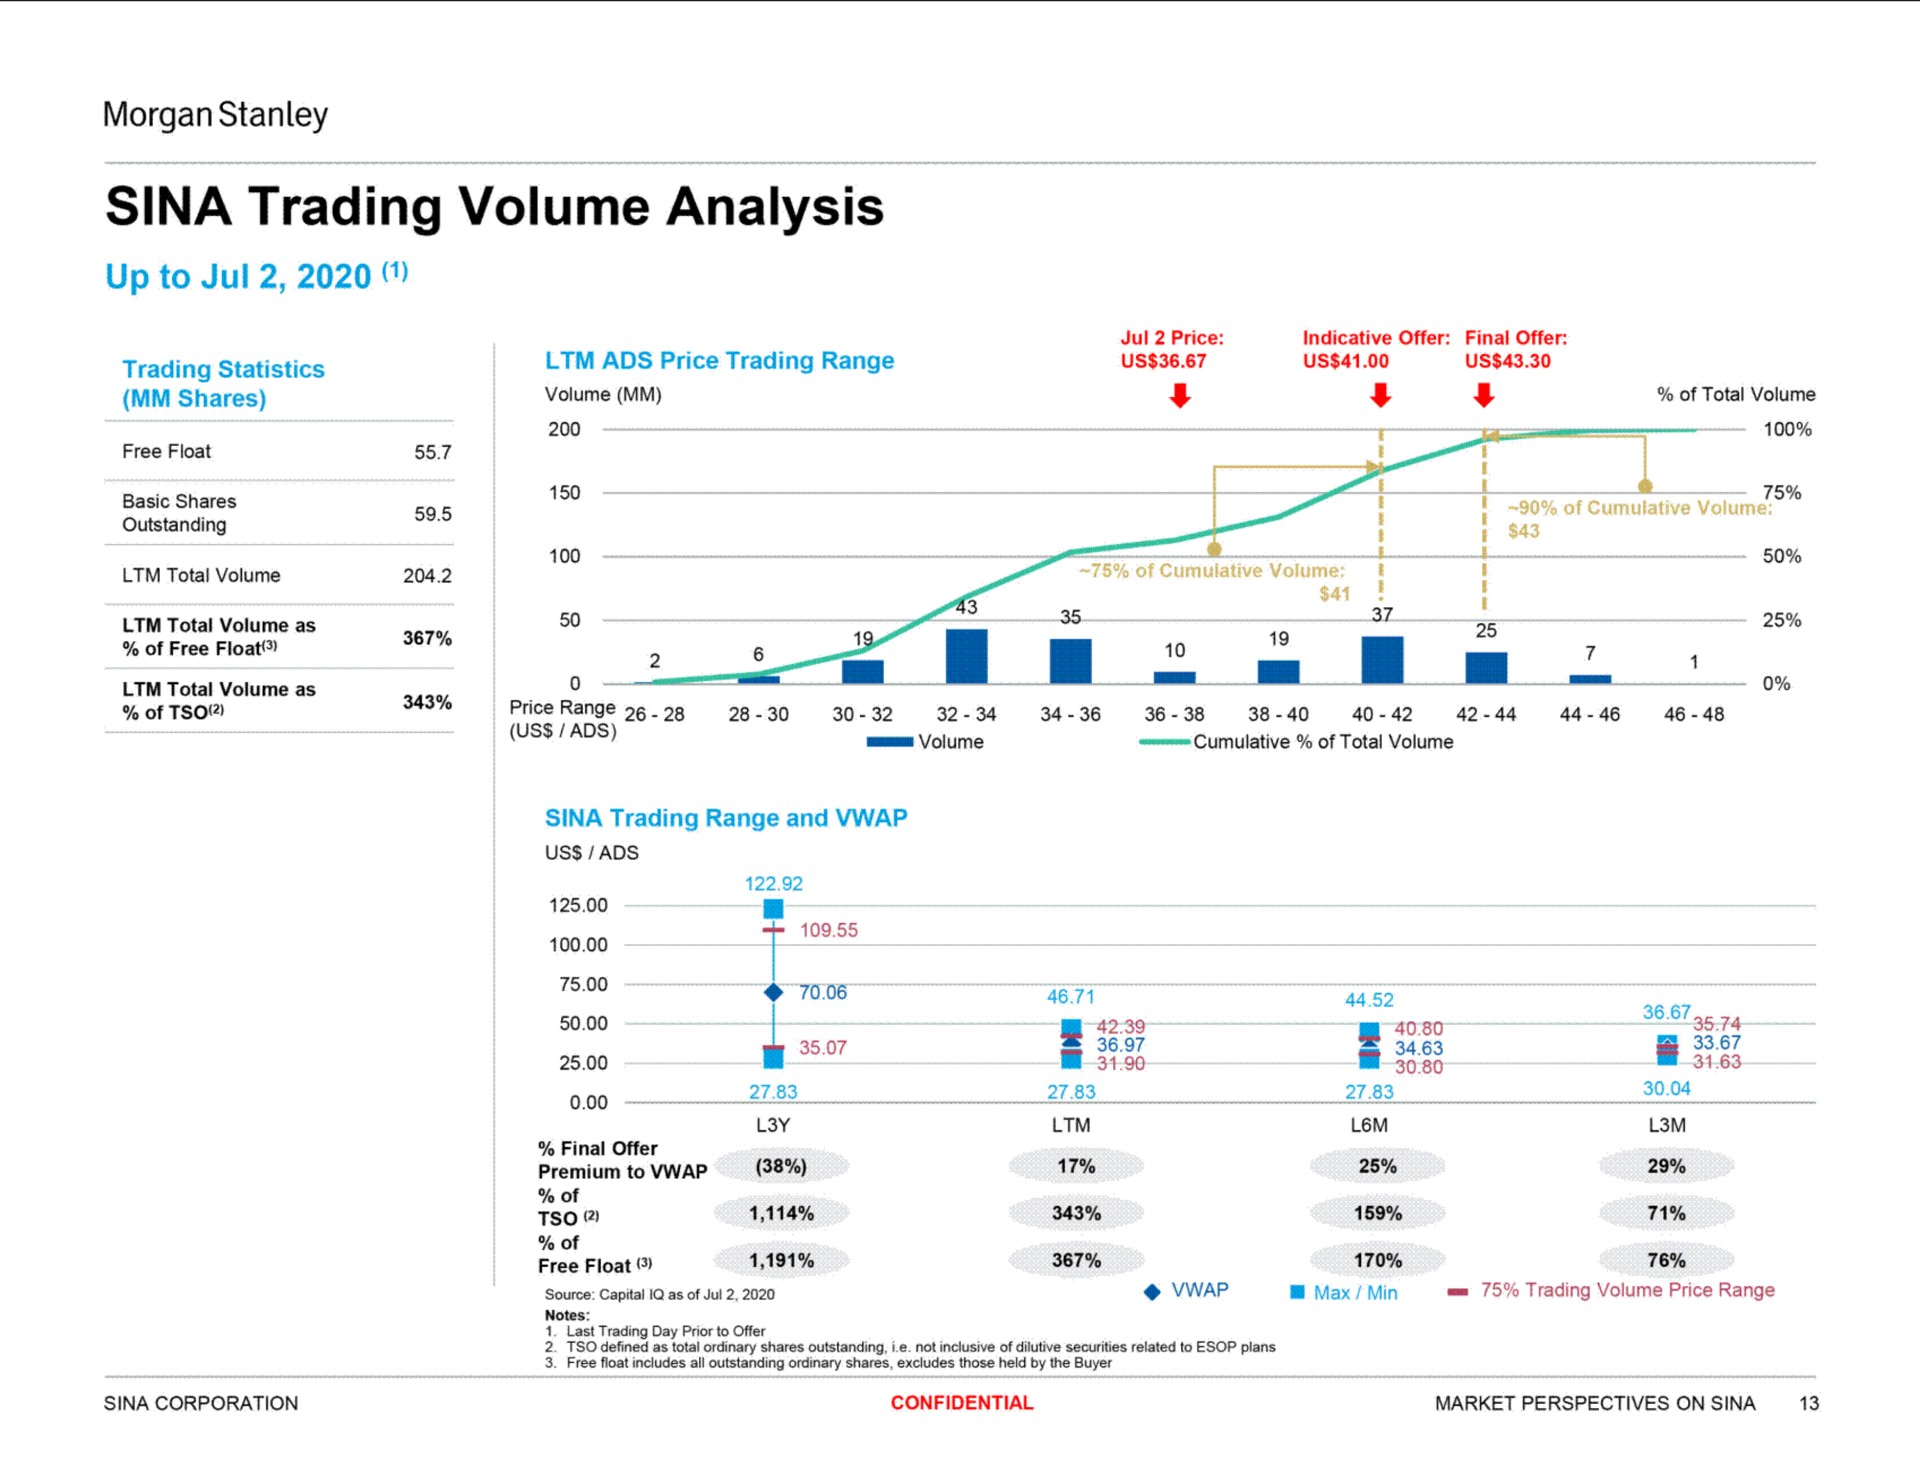 sina trading volume analysis | Morgan Stanley